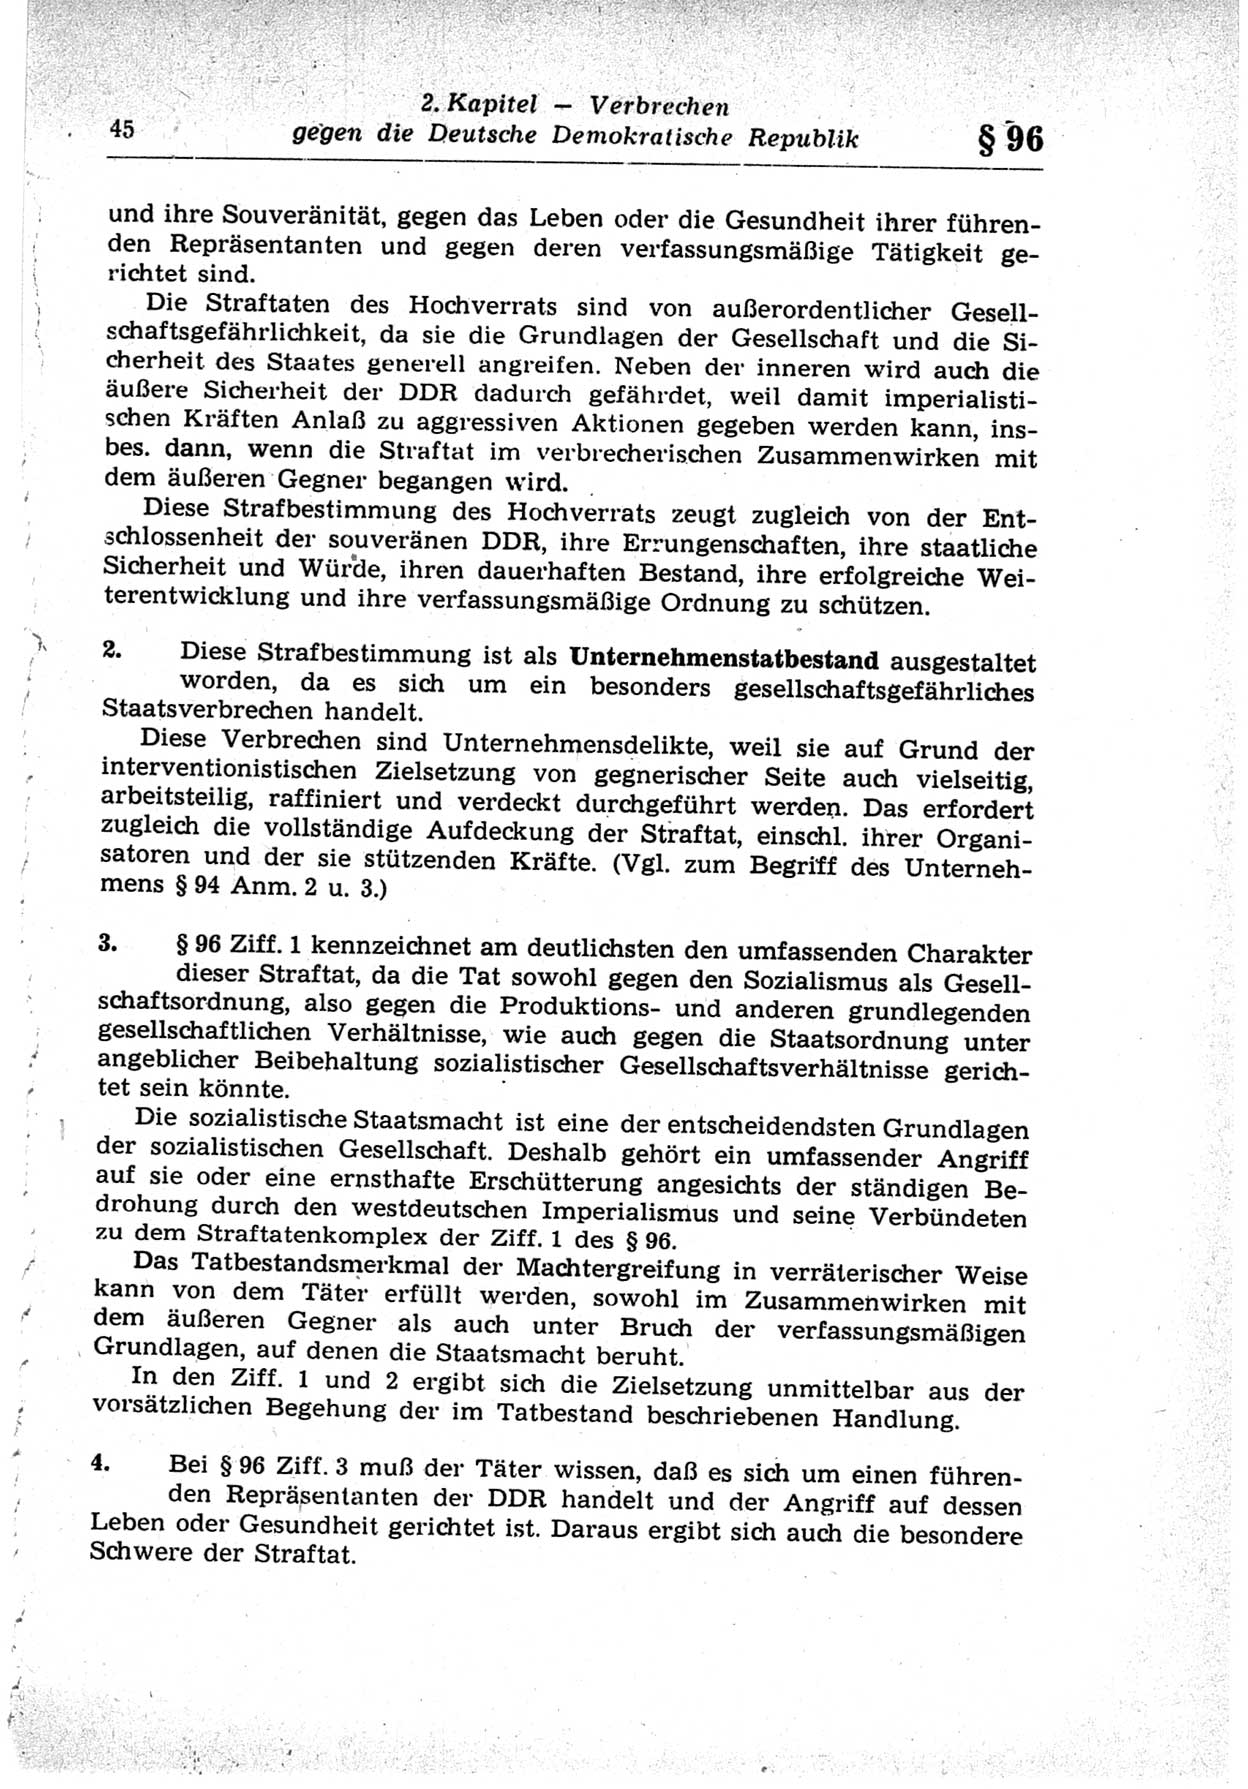 Strafrecht der Deutschen Demokratischen Republik (DDR), Lehrkommentar zum Strafgesetzbuch (StGB), Besonderer Teil 1969, Seite 45 (Strafr. DDR Lehrkomm. StGB BT 1969, S. 45)